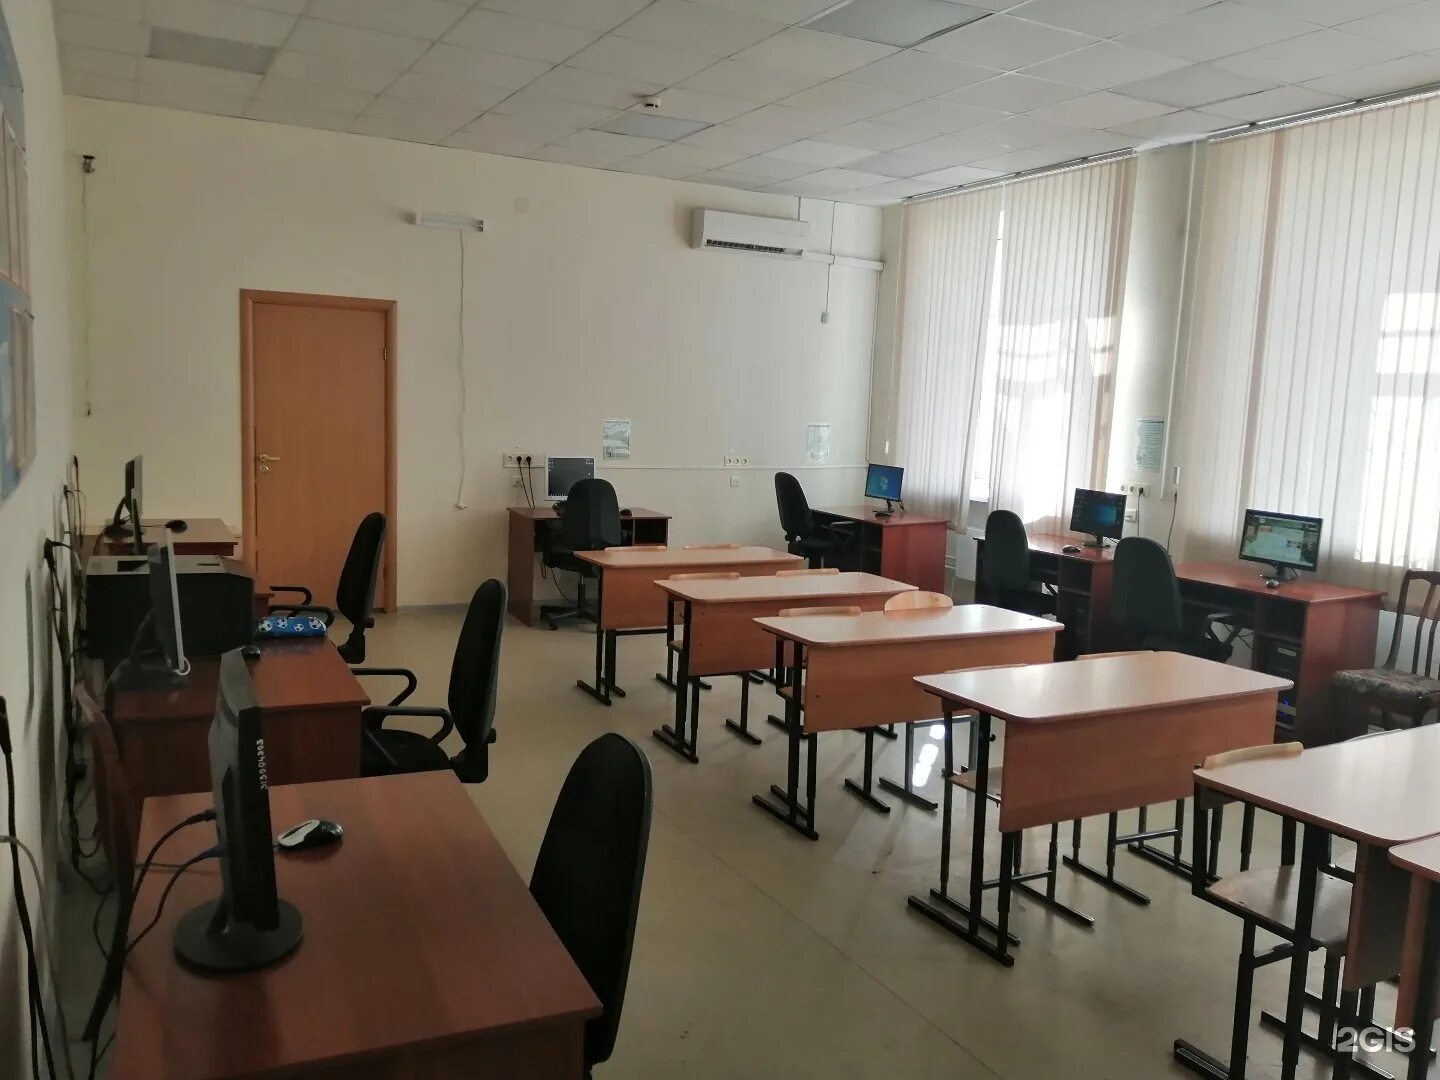 Второй этаж в школе. Кабинет технологии для мальчиков в школе. Школа 2 этажа. Школа 37 Москва кабинет технологии. Фото этажи школьные.